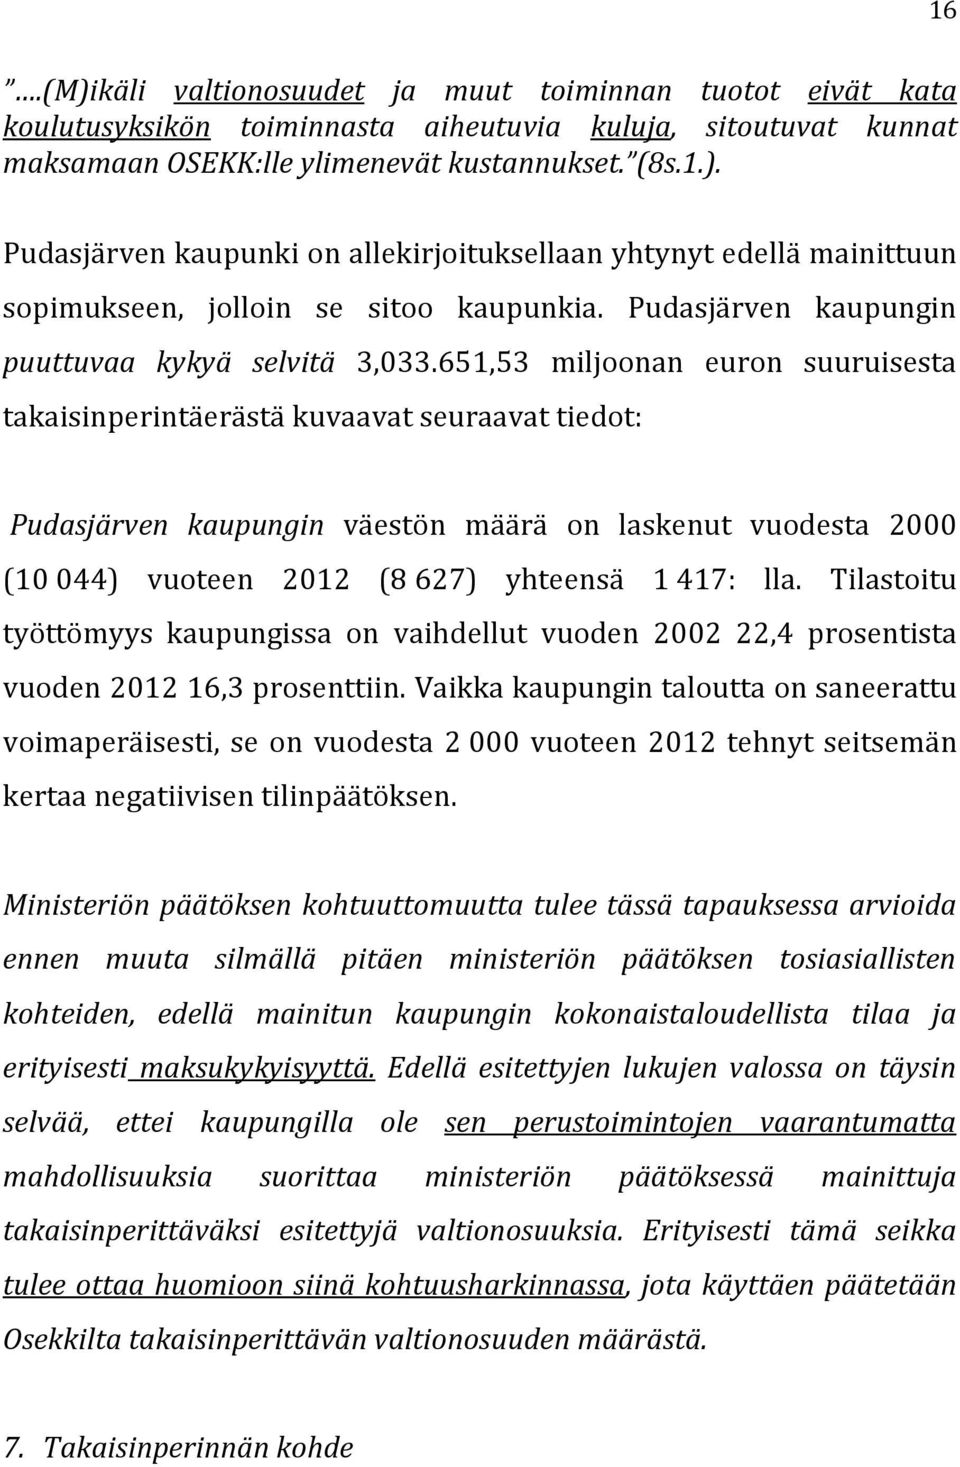 651,53 miljoonan euron suuruisesta takaisinperintäerästä kuvaavat seuraavat tiedot: Pudasjärven kaupungin väestön määrä on laskenut vuodesta 2000 (10 044) vuoteen 2012 (8 627) yhteensä 1 417: lla.